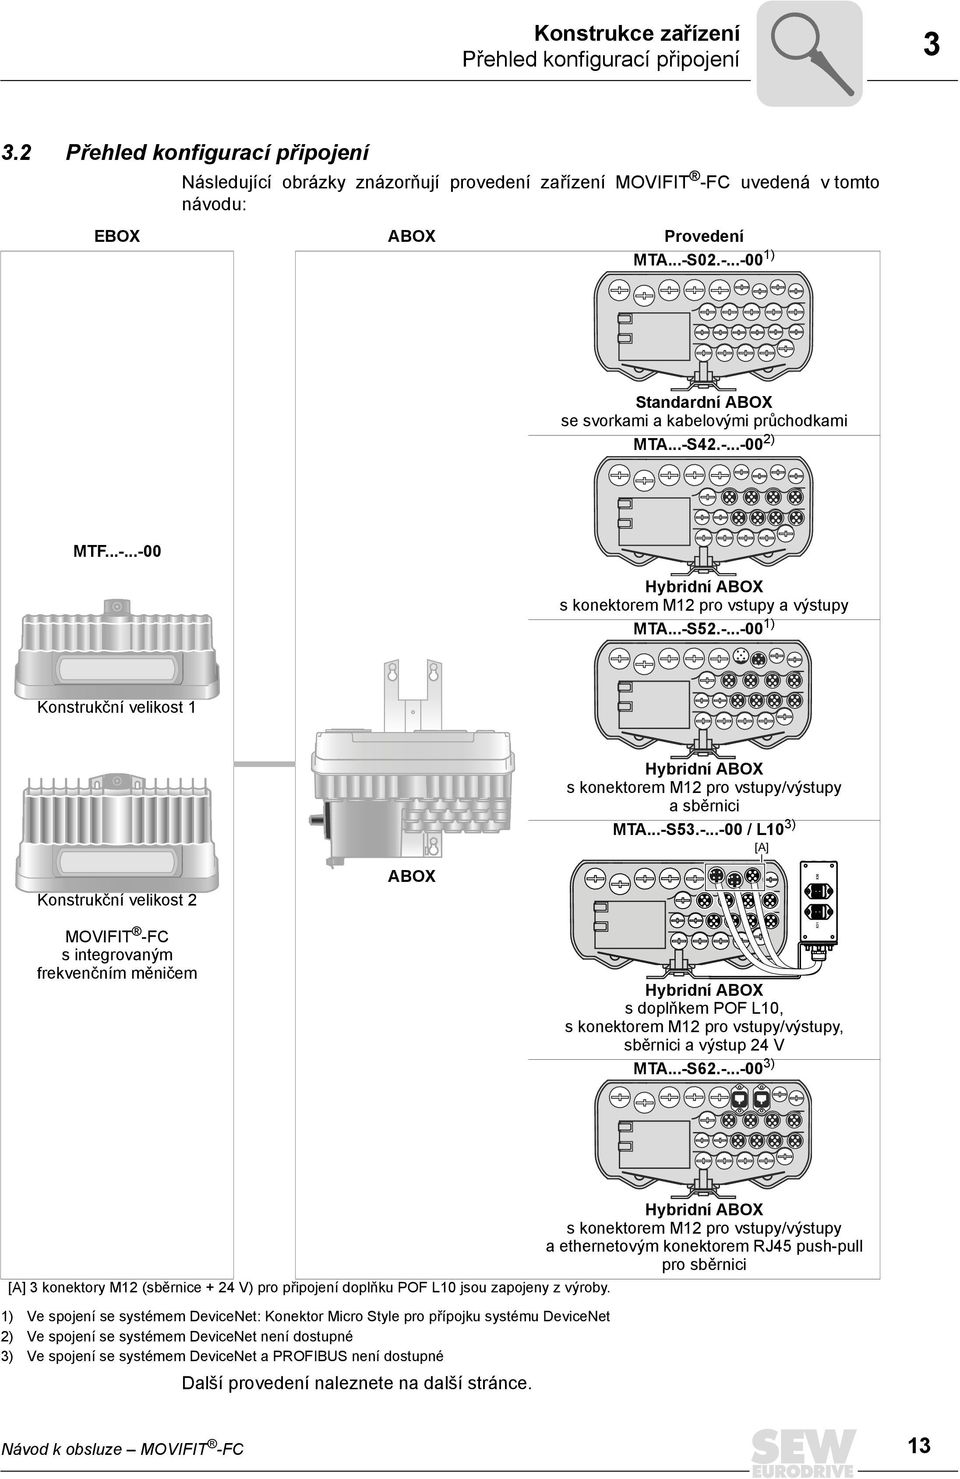 ..-S53.-...-00 / L10 3) [A] Konstrukční velikost 2 MOVIFIT -FC s integrovaným frekvenčním měničem ABOX Hybridní ABOX s doplňkem POF L10, s konektorem M12 pro vstupy/výstupy, sběrnici a výstup 24 V MTA.